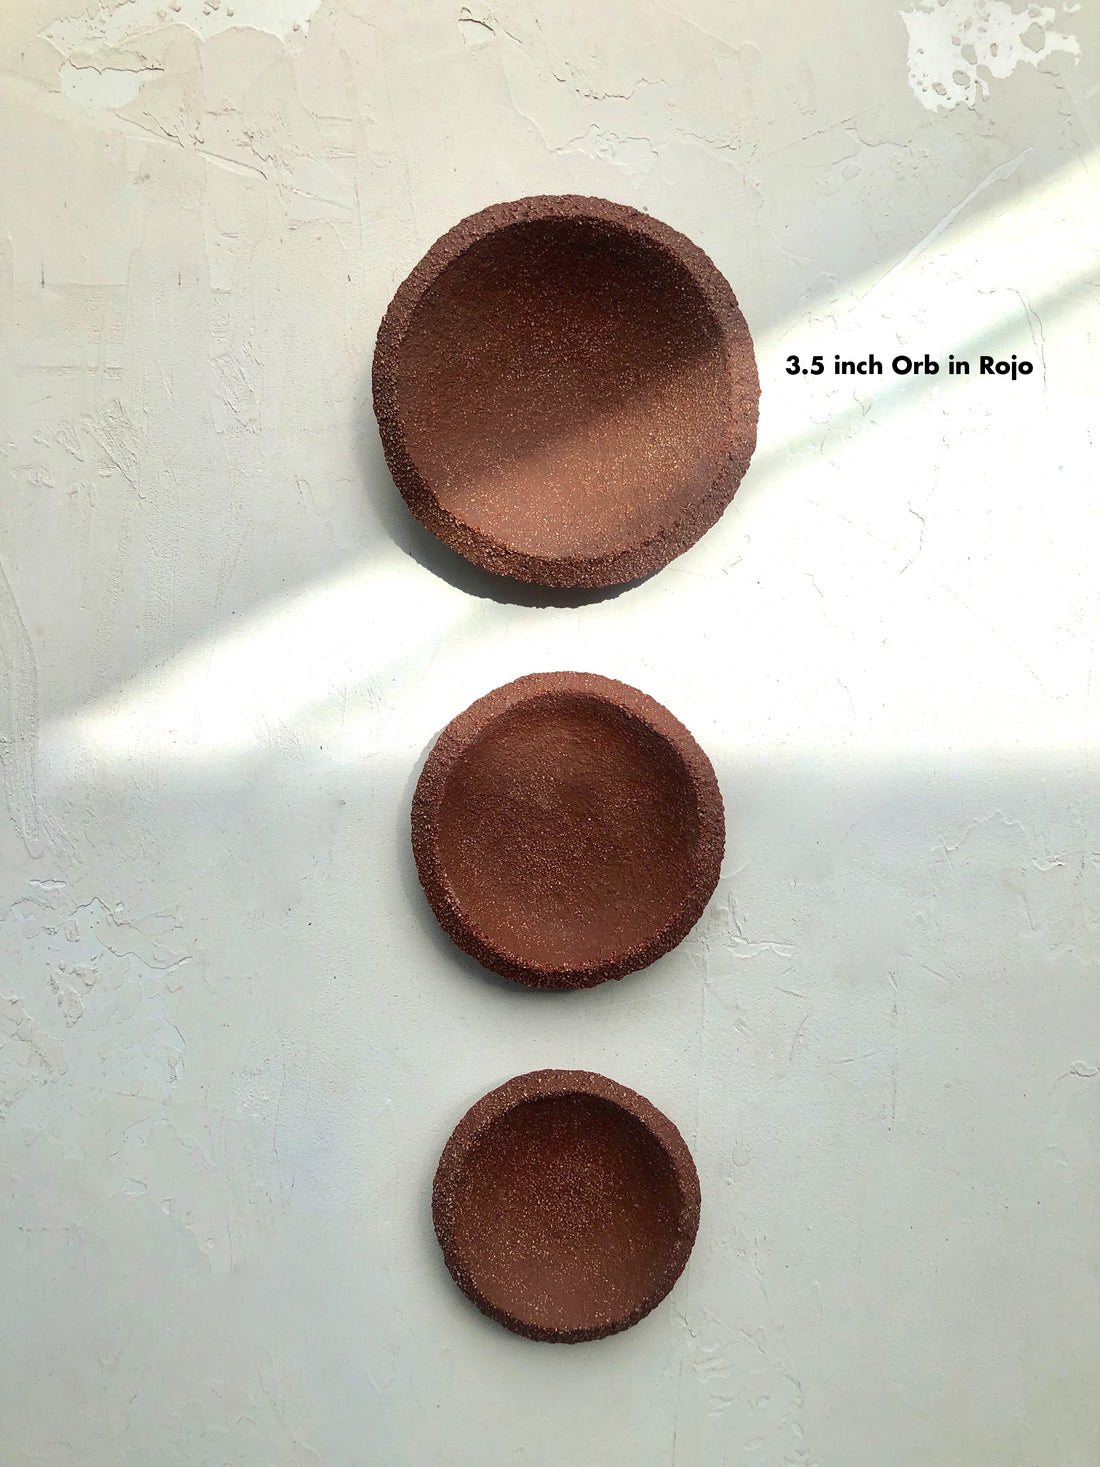 3.5 inch Orb Dish in Rojo